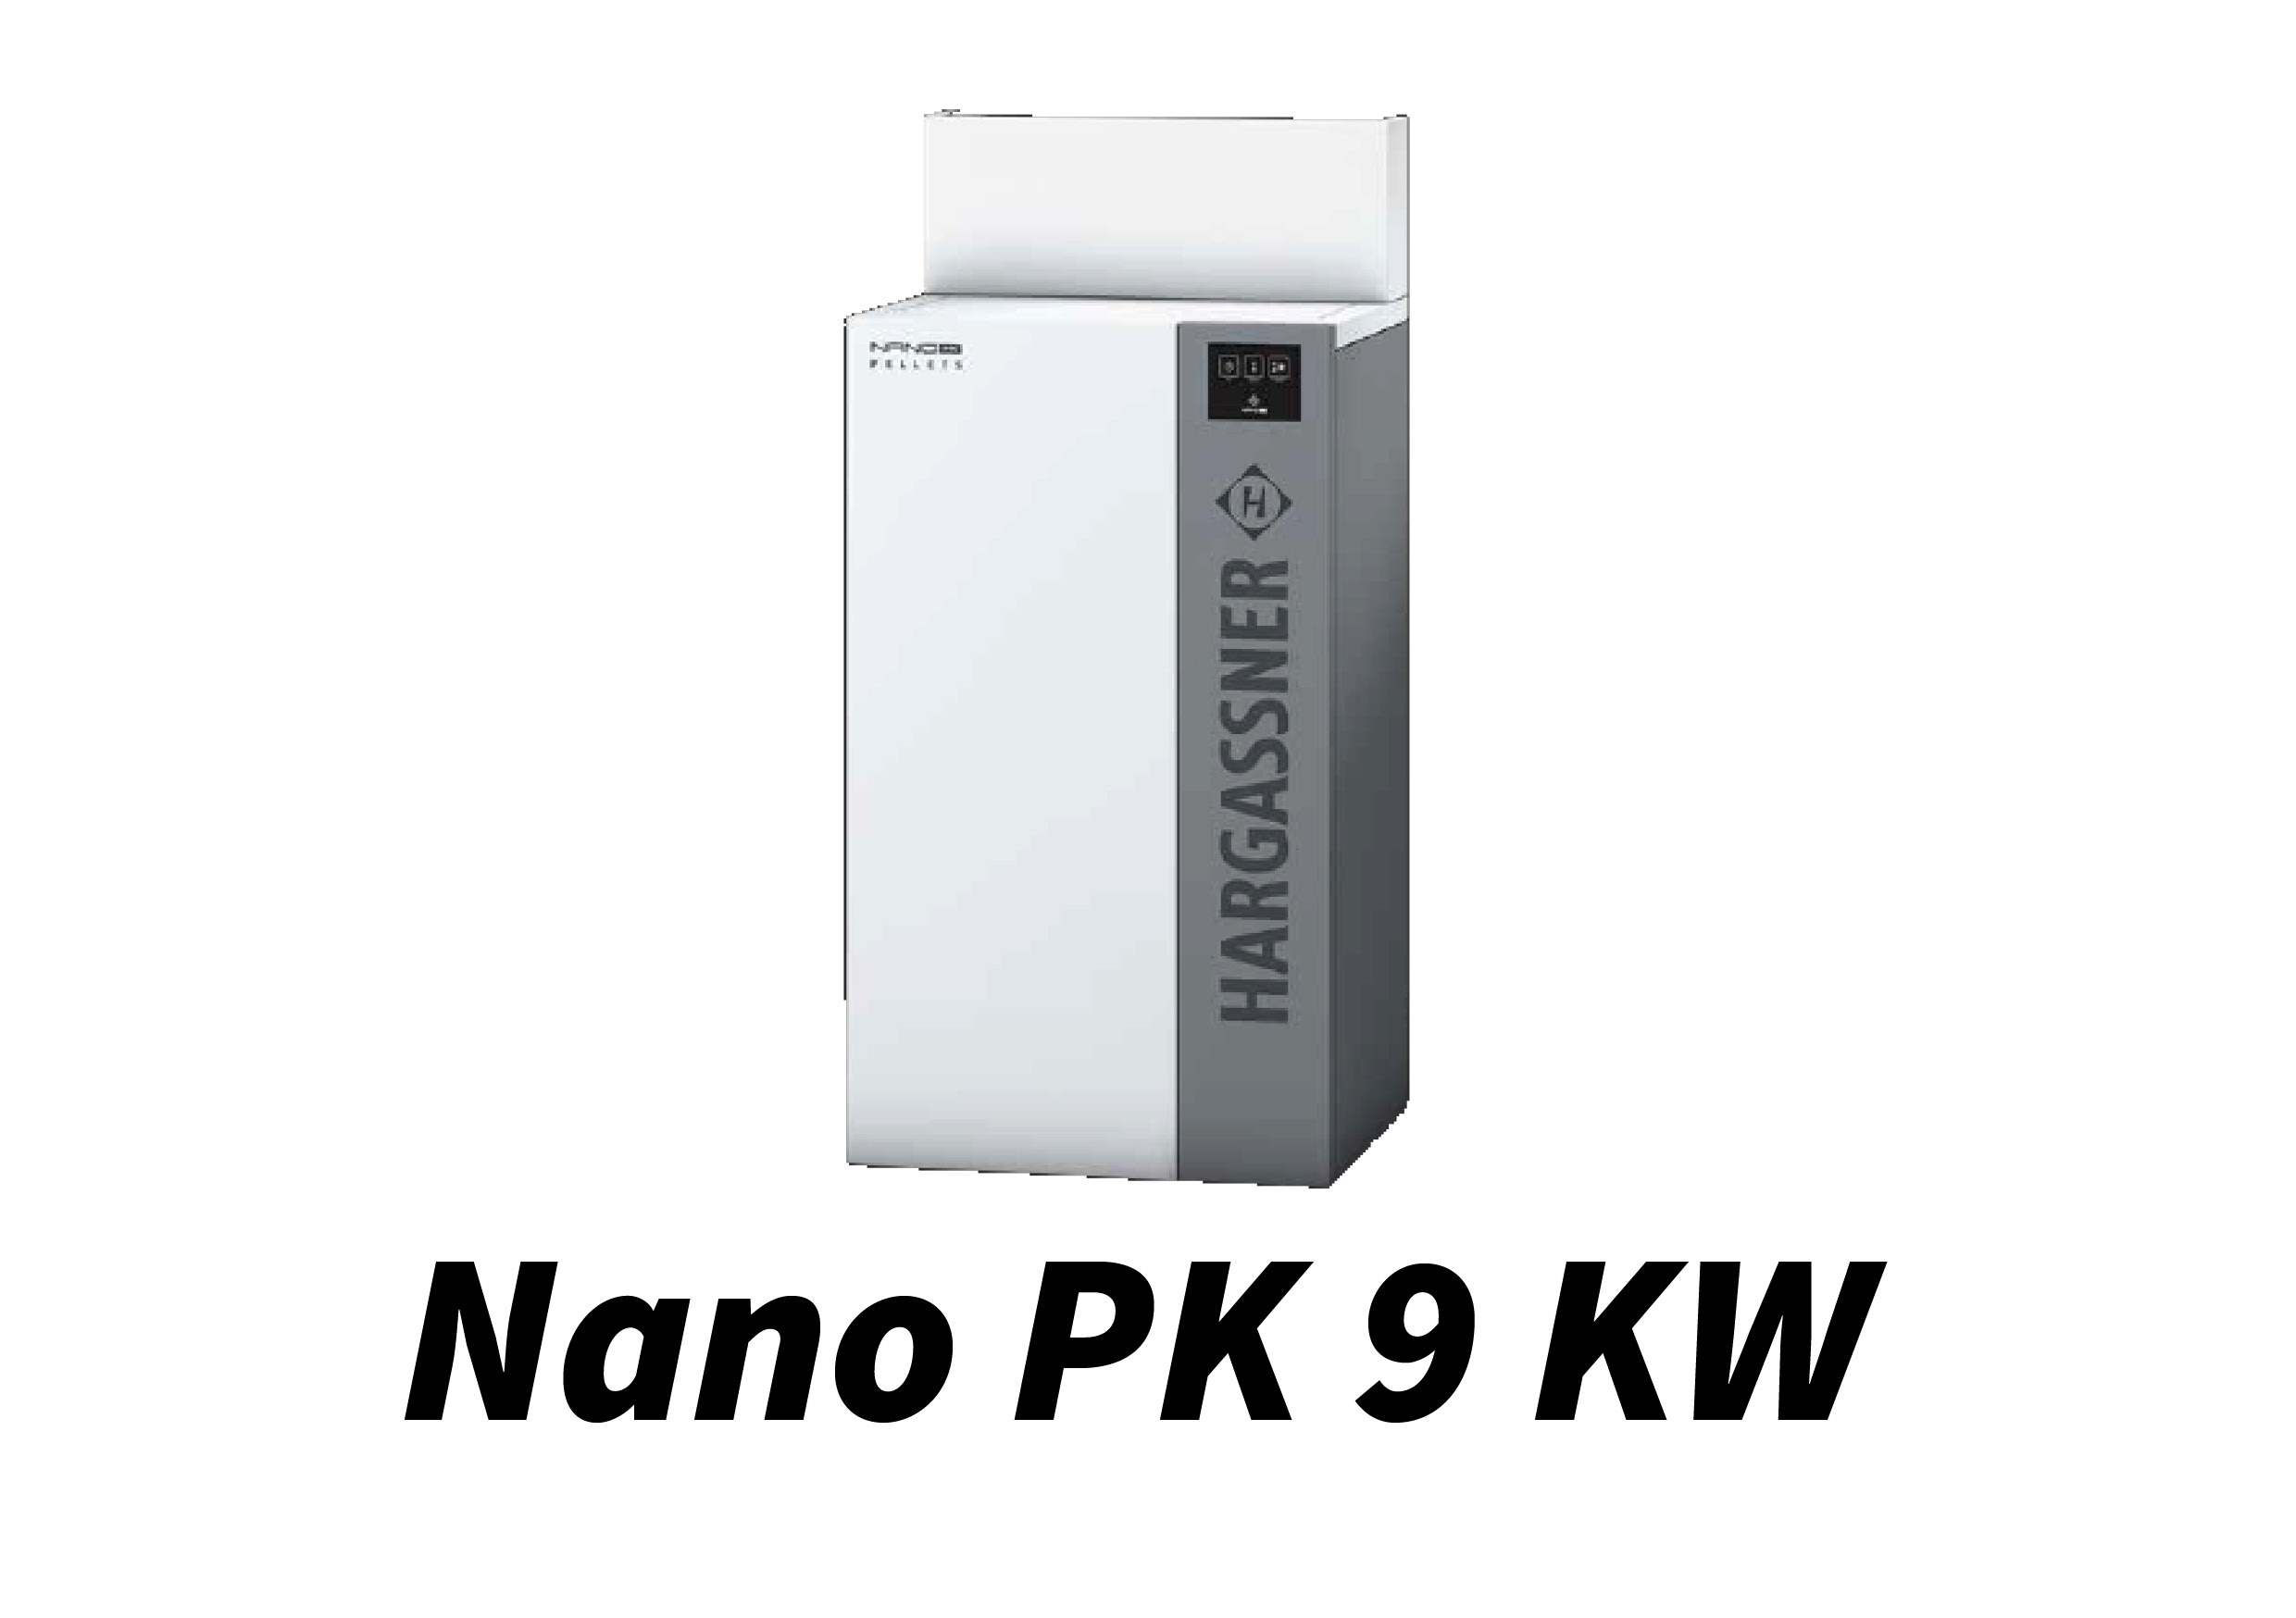 Nano PK 9 kW